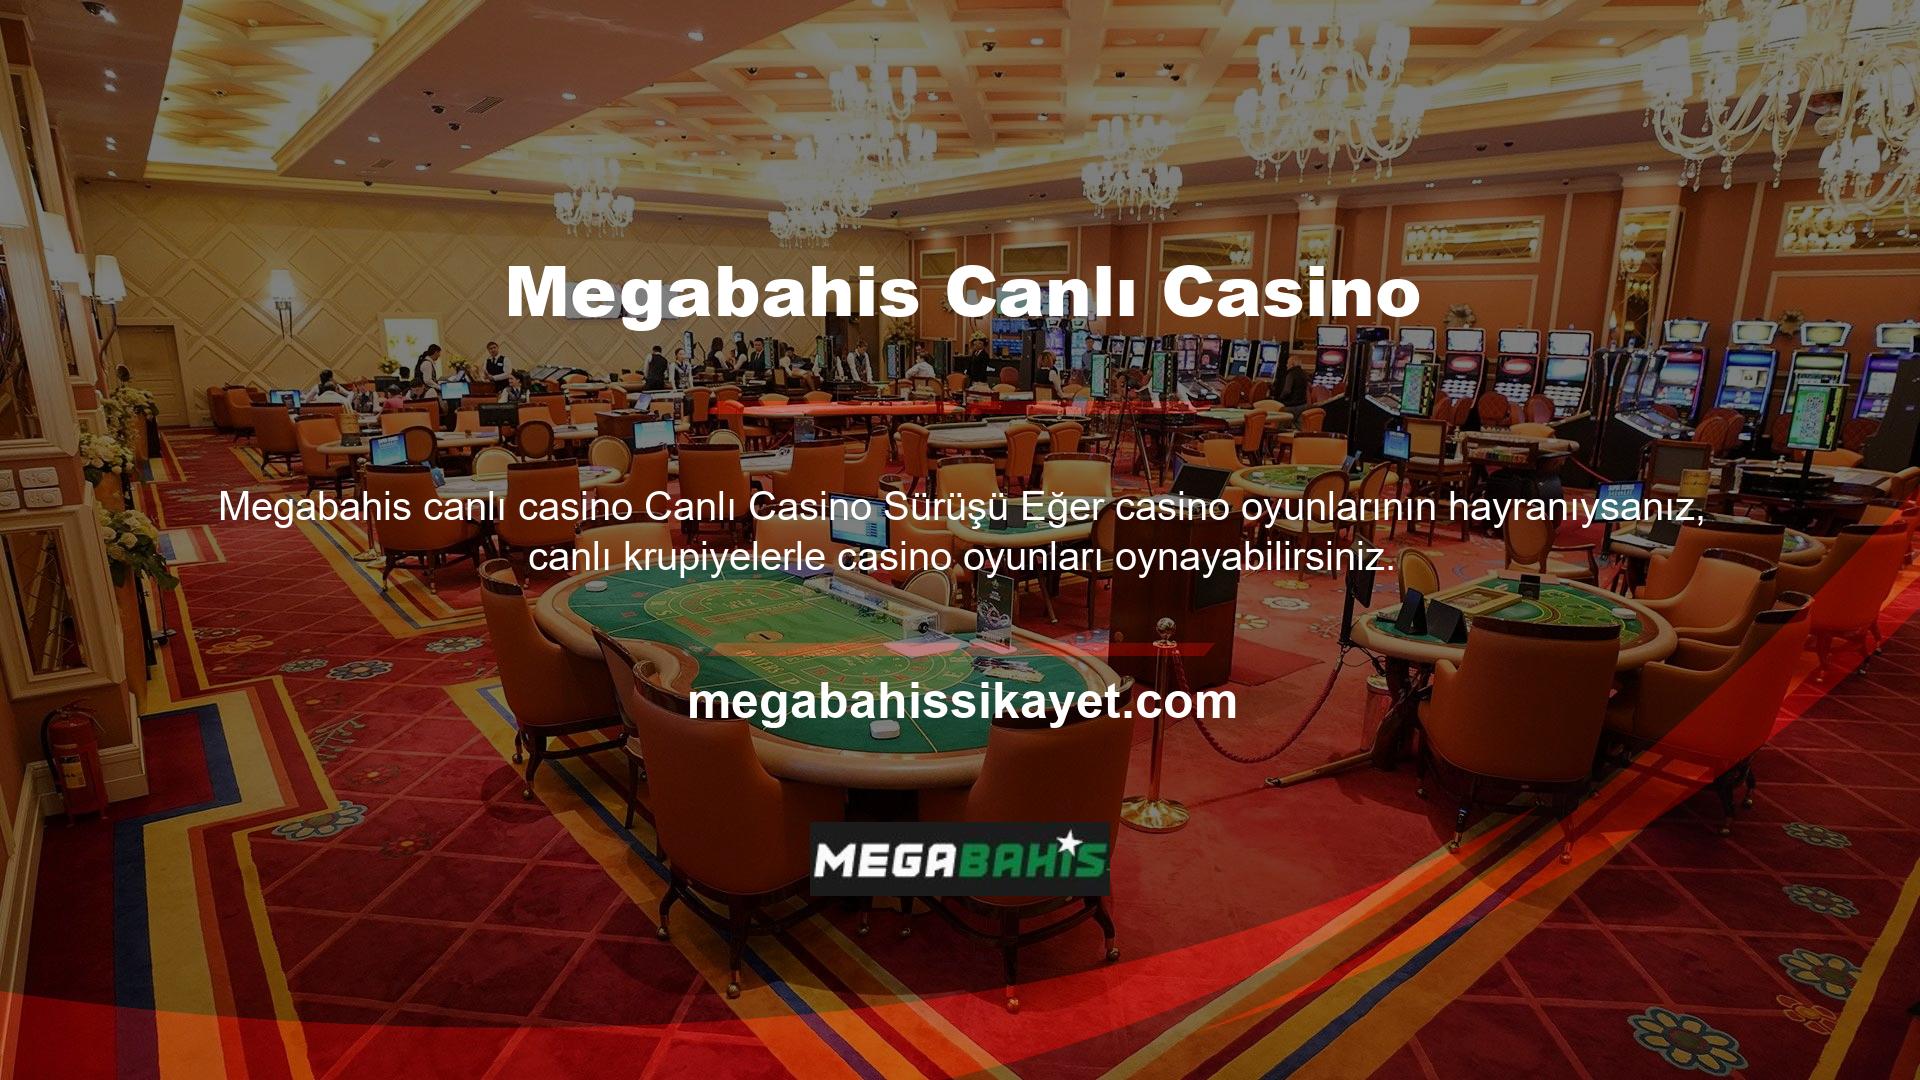 Bugün, en iyi Türk online casino sitelerinin çoğu, Canlı Rulet, Blackjack, Poker, Backlat vb